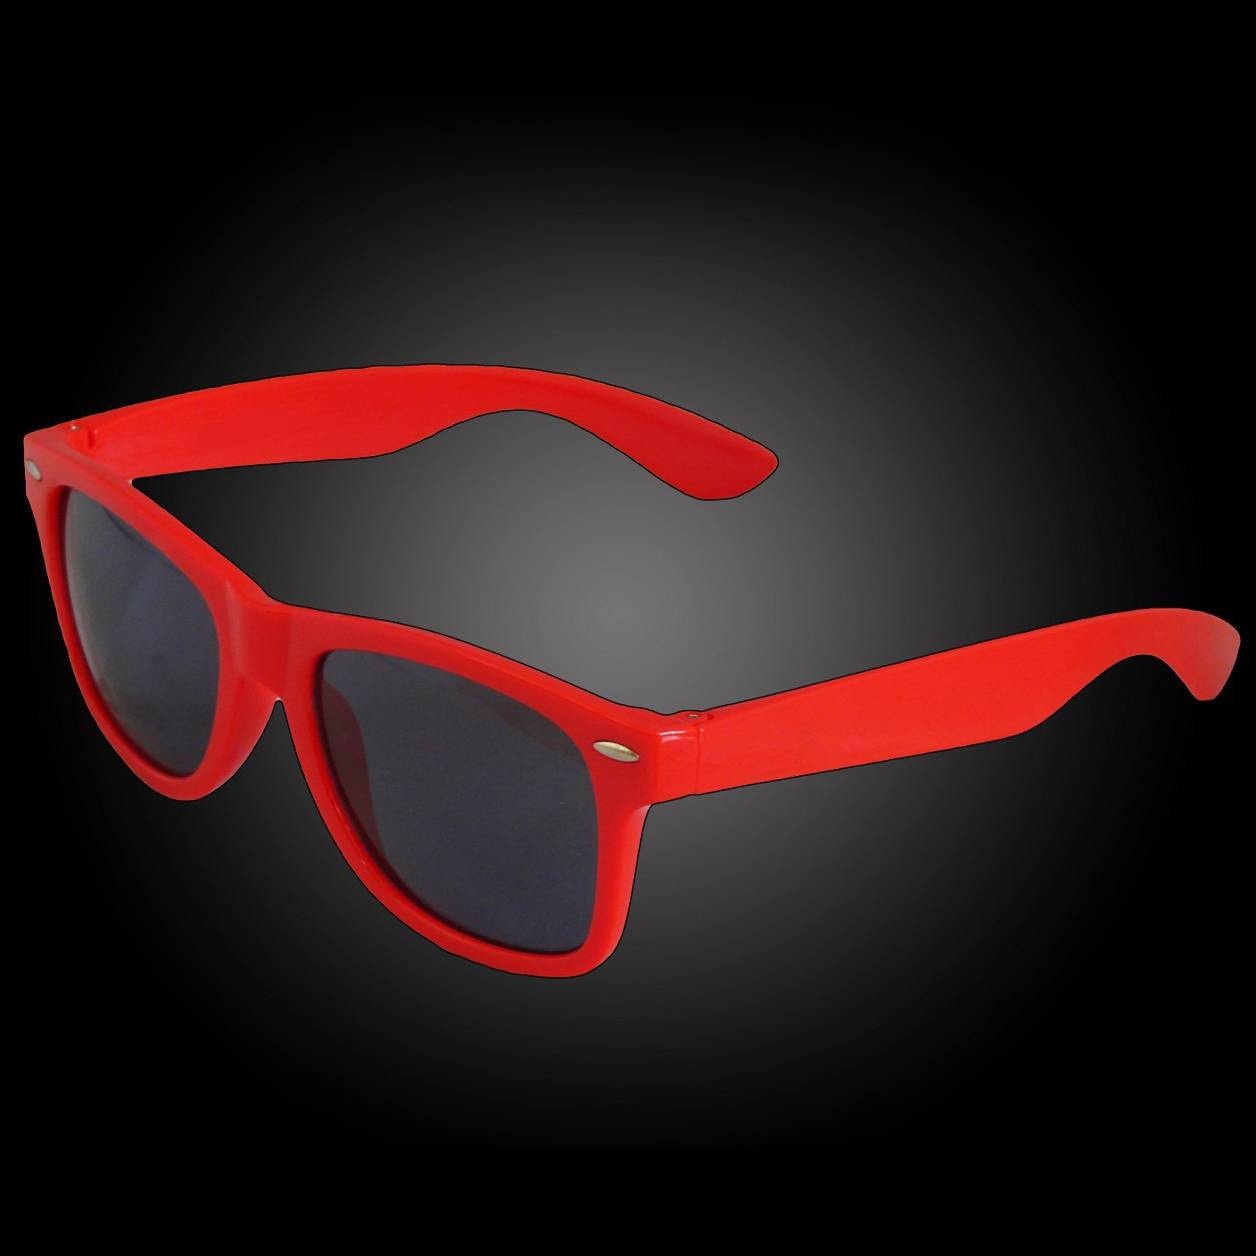 Goedkope rood zonnebrillen te koop - - Eventgadgets.be